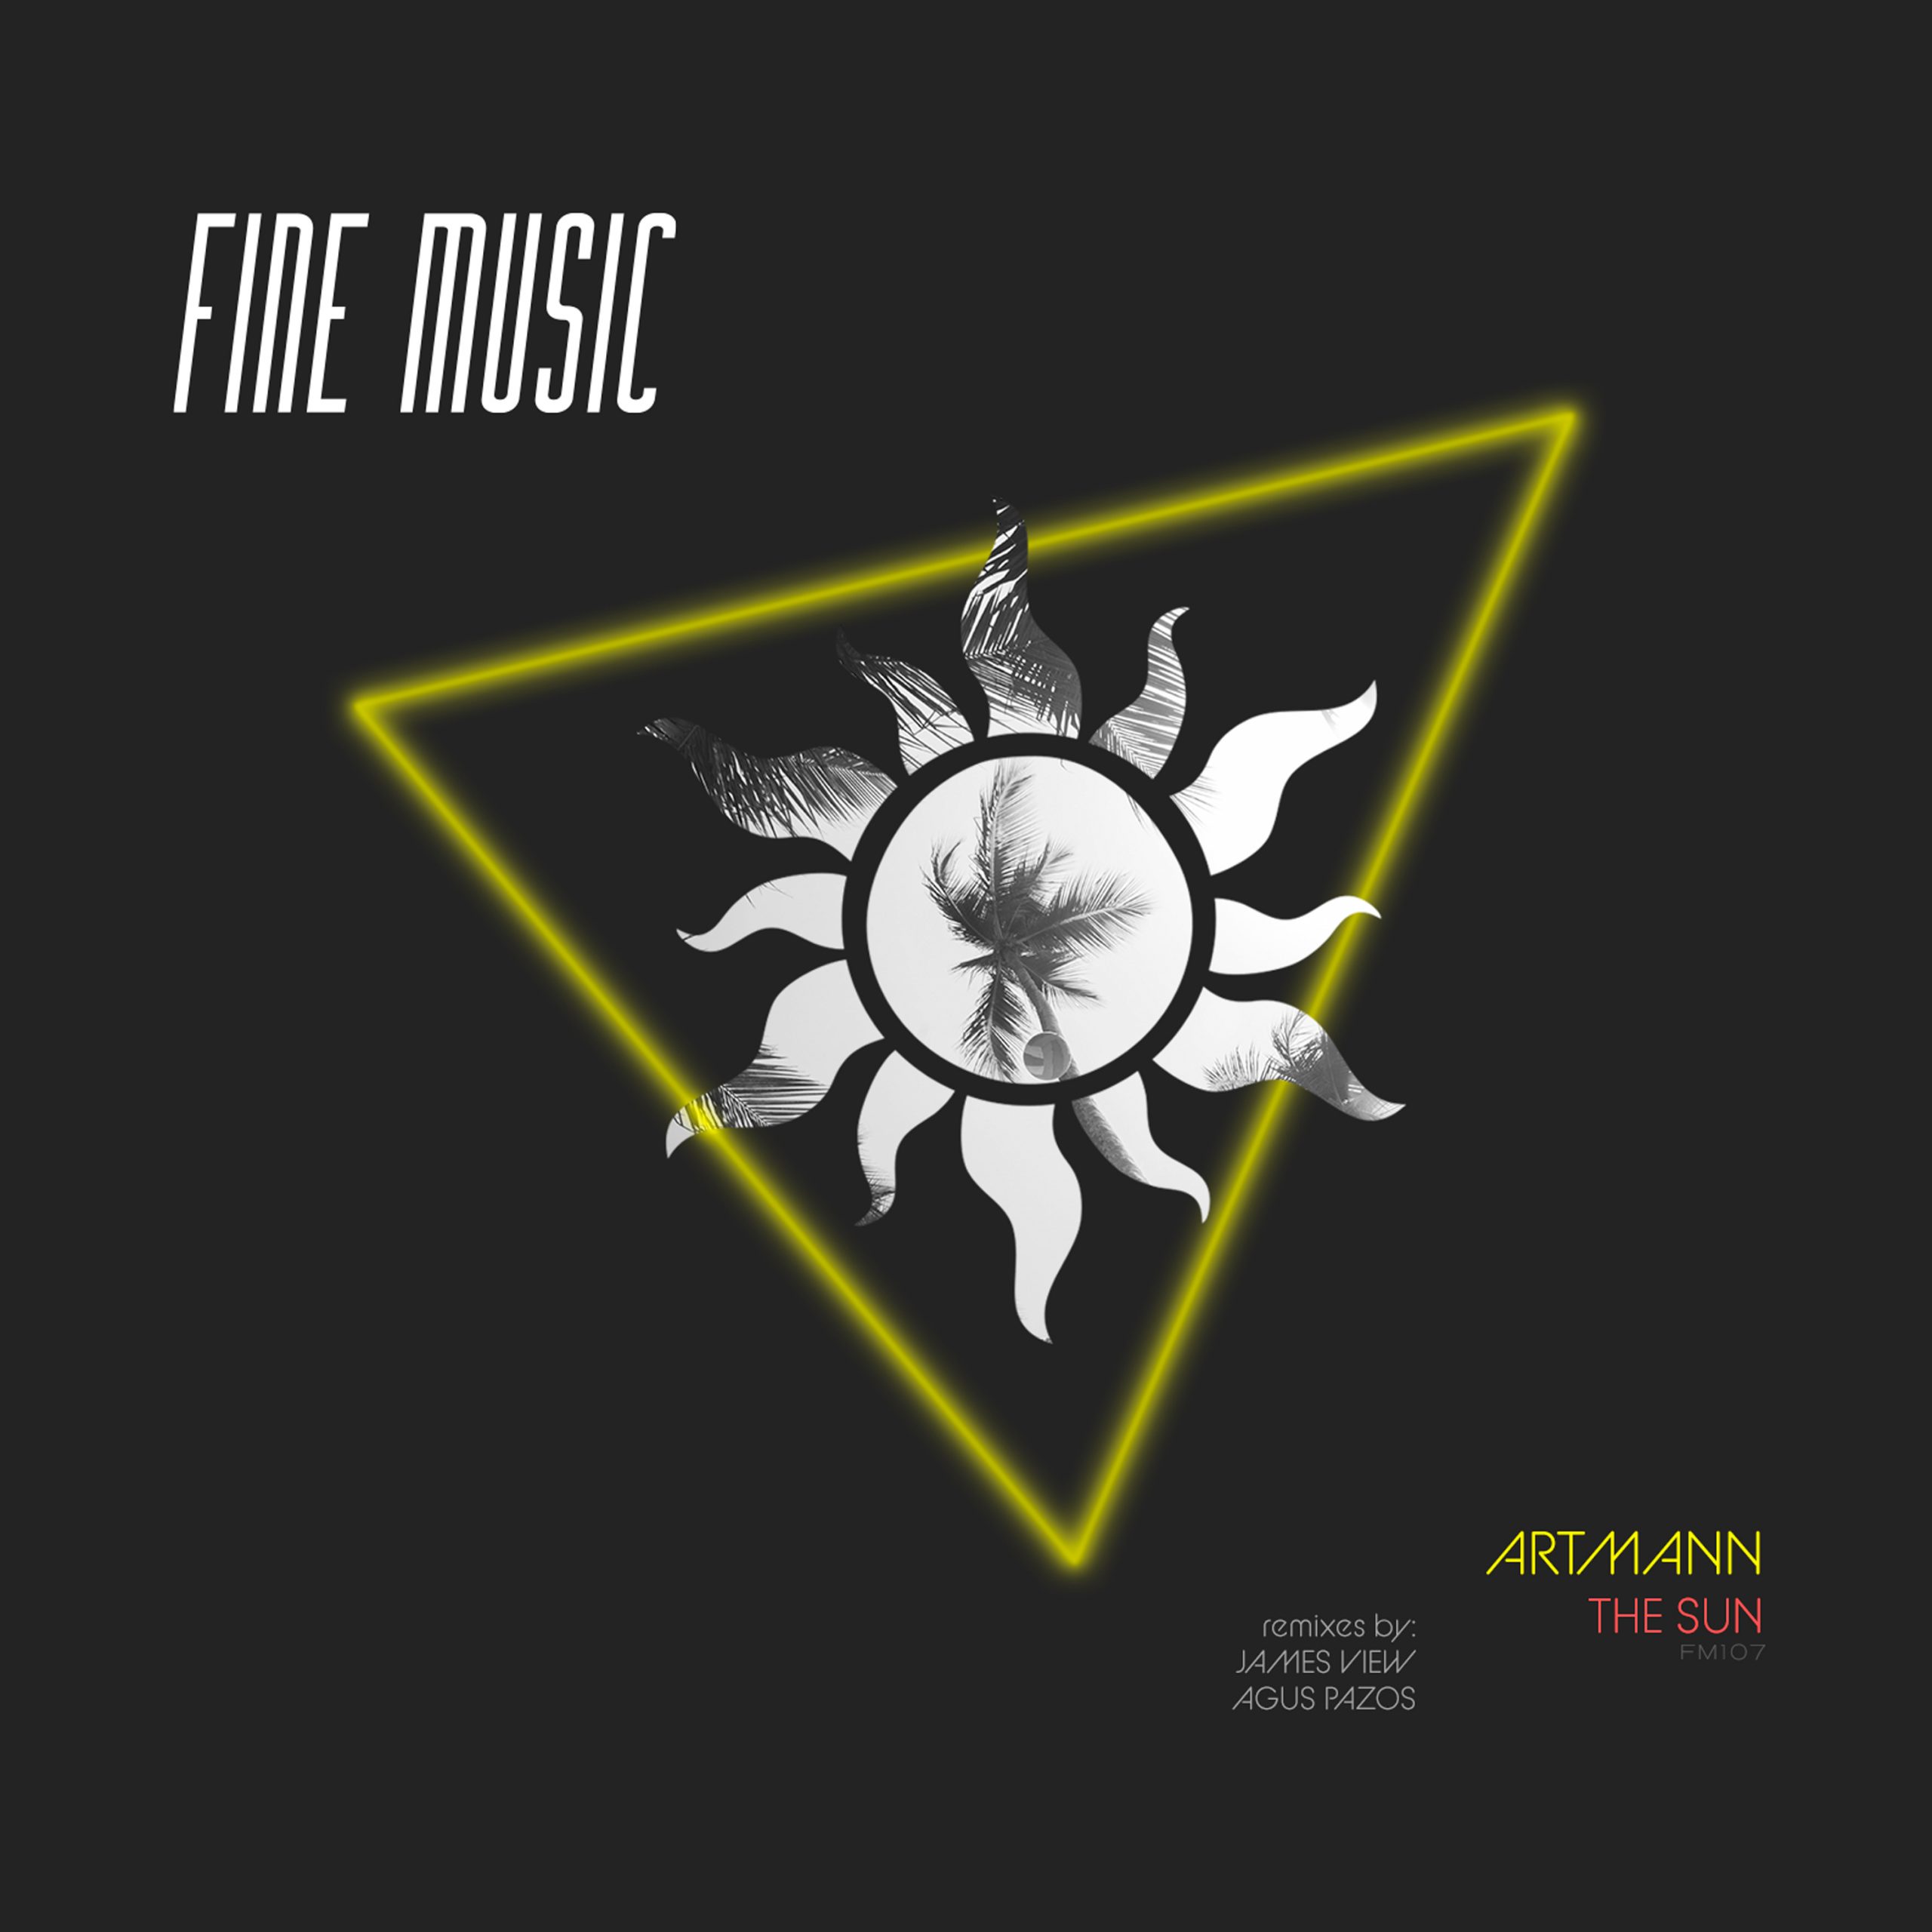 fine music symbol